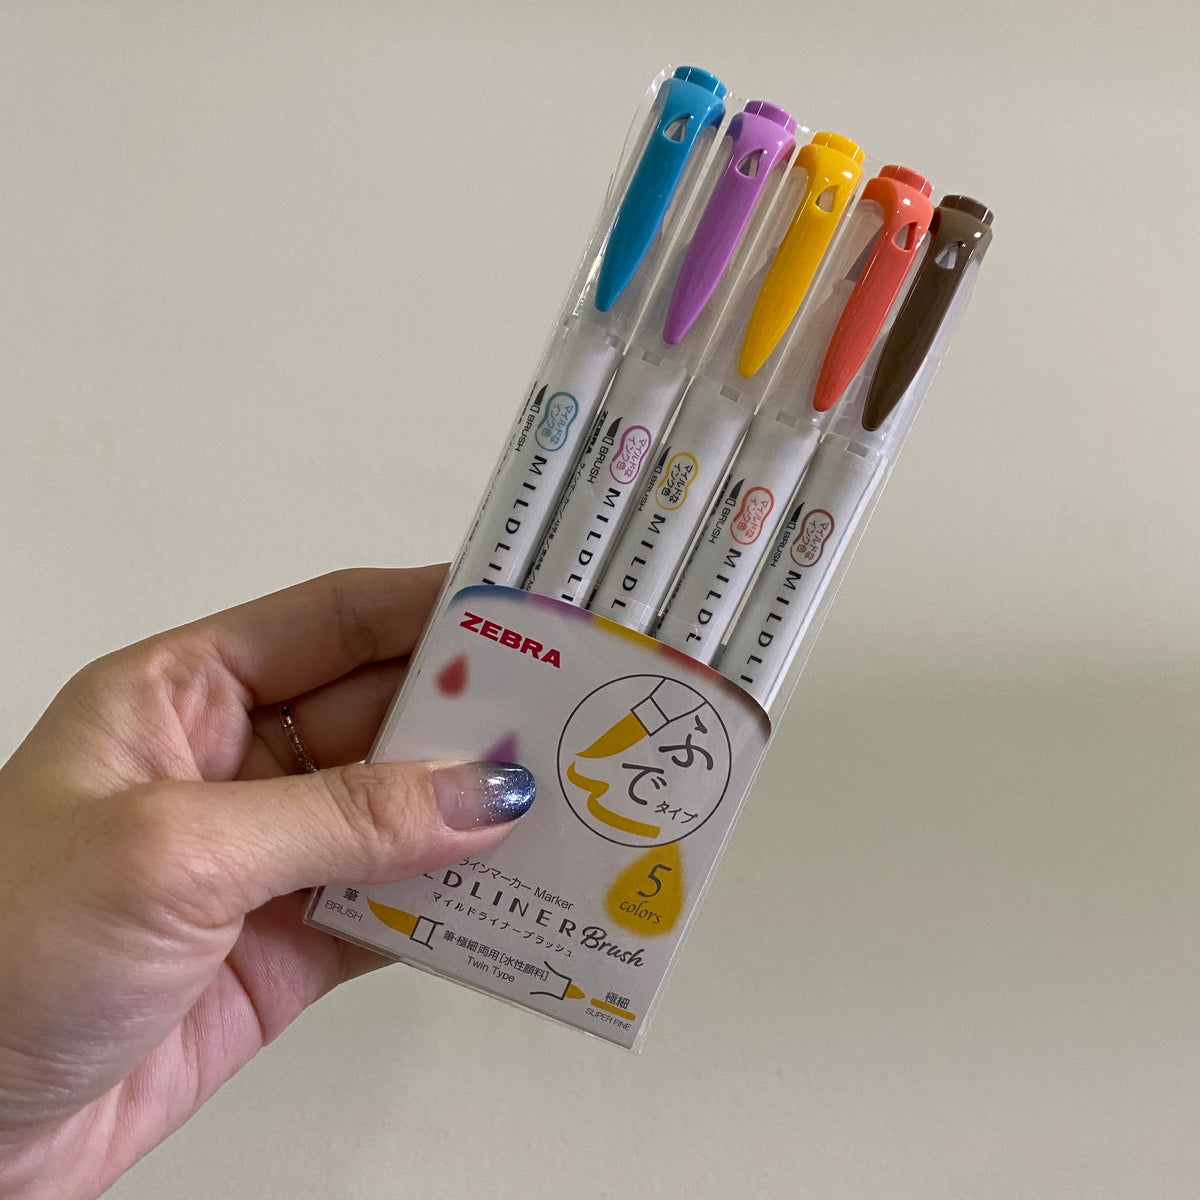 Zebra Mildliner Highlighters Dual Tip Marker Pen - Individual/Set of 5